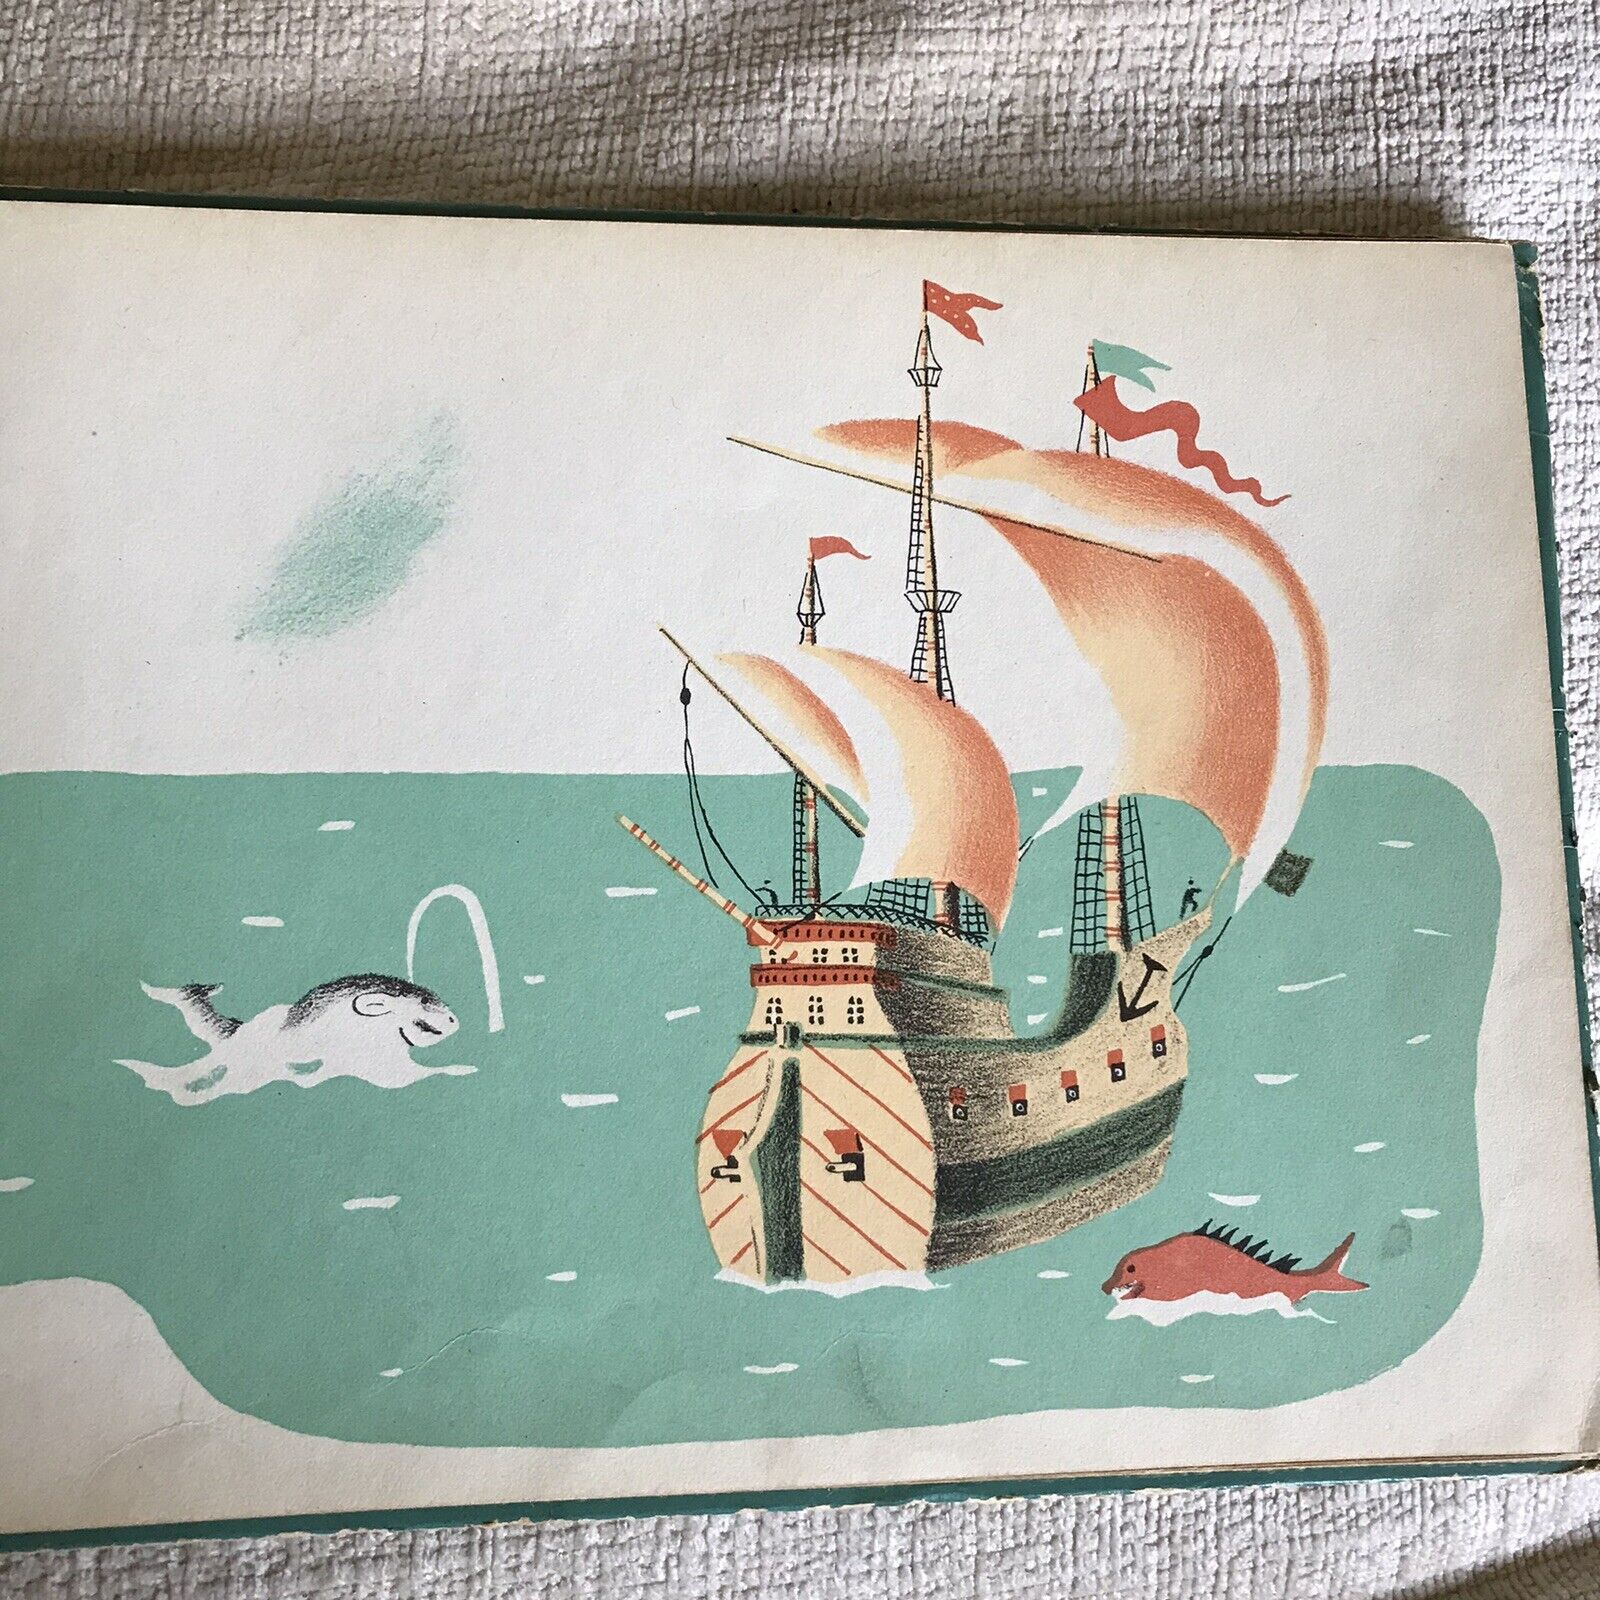 1937 Sing A Song Of Journeys - Pamela Bianco (illust Denise Mary)Grosset & Dunla Honeyburn Books (UK)